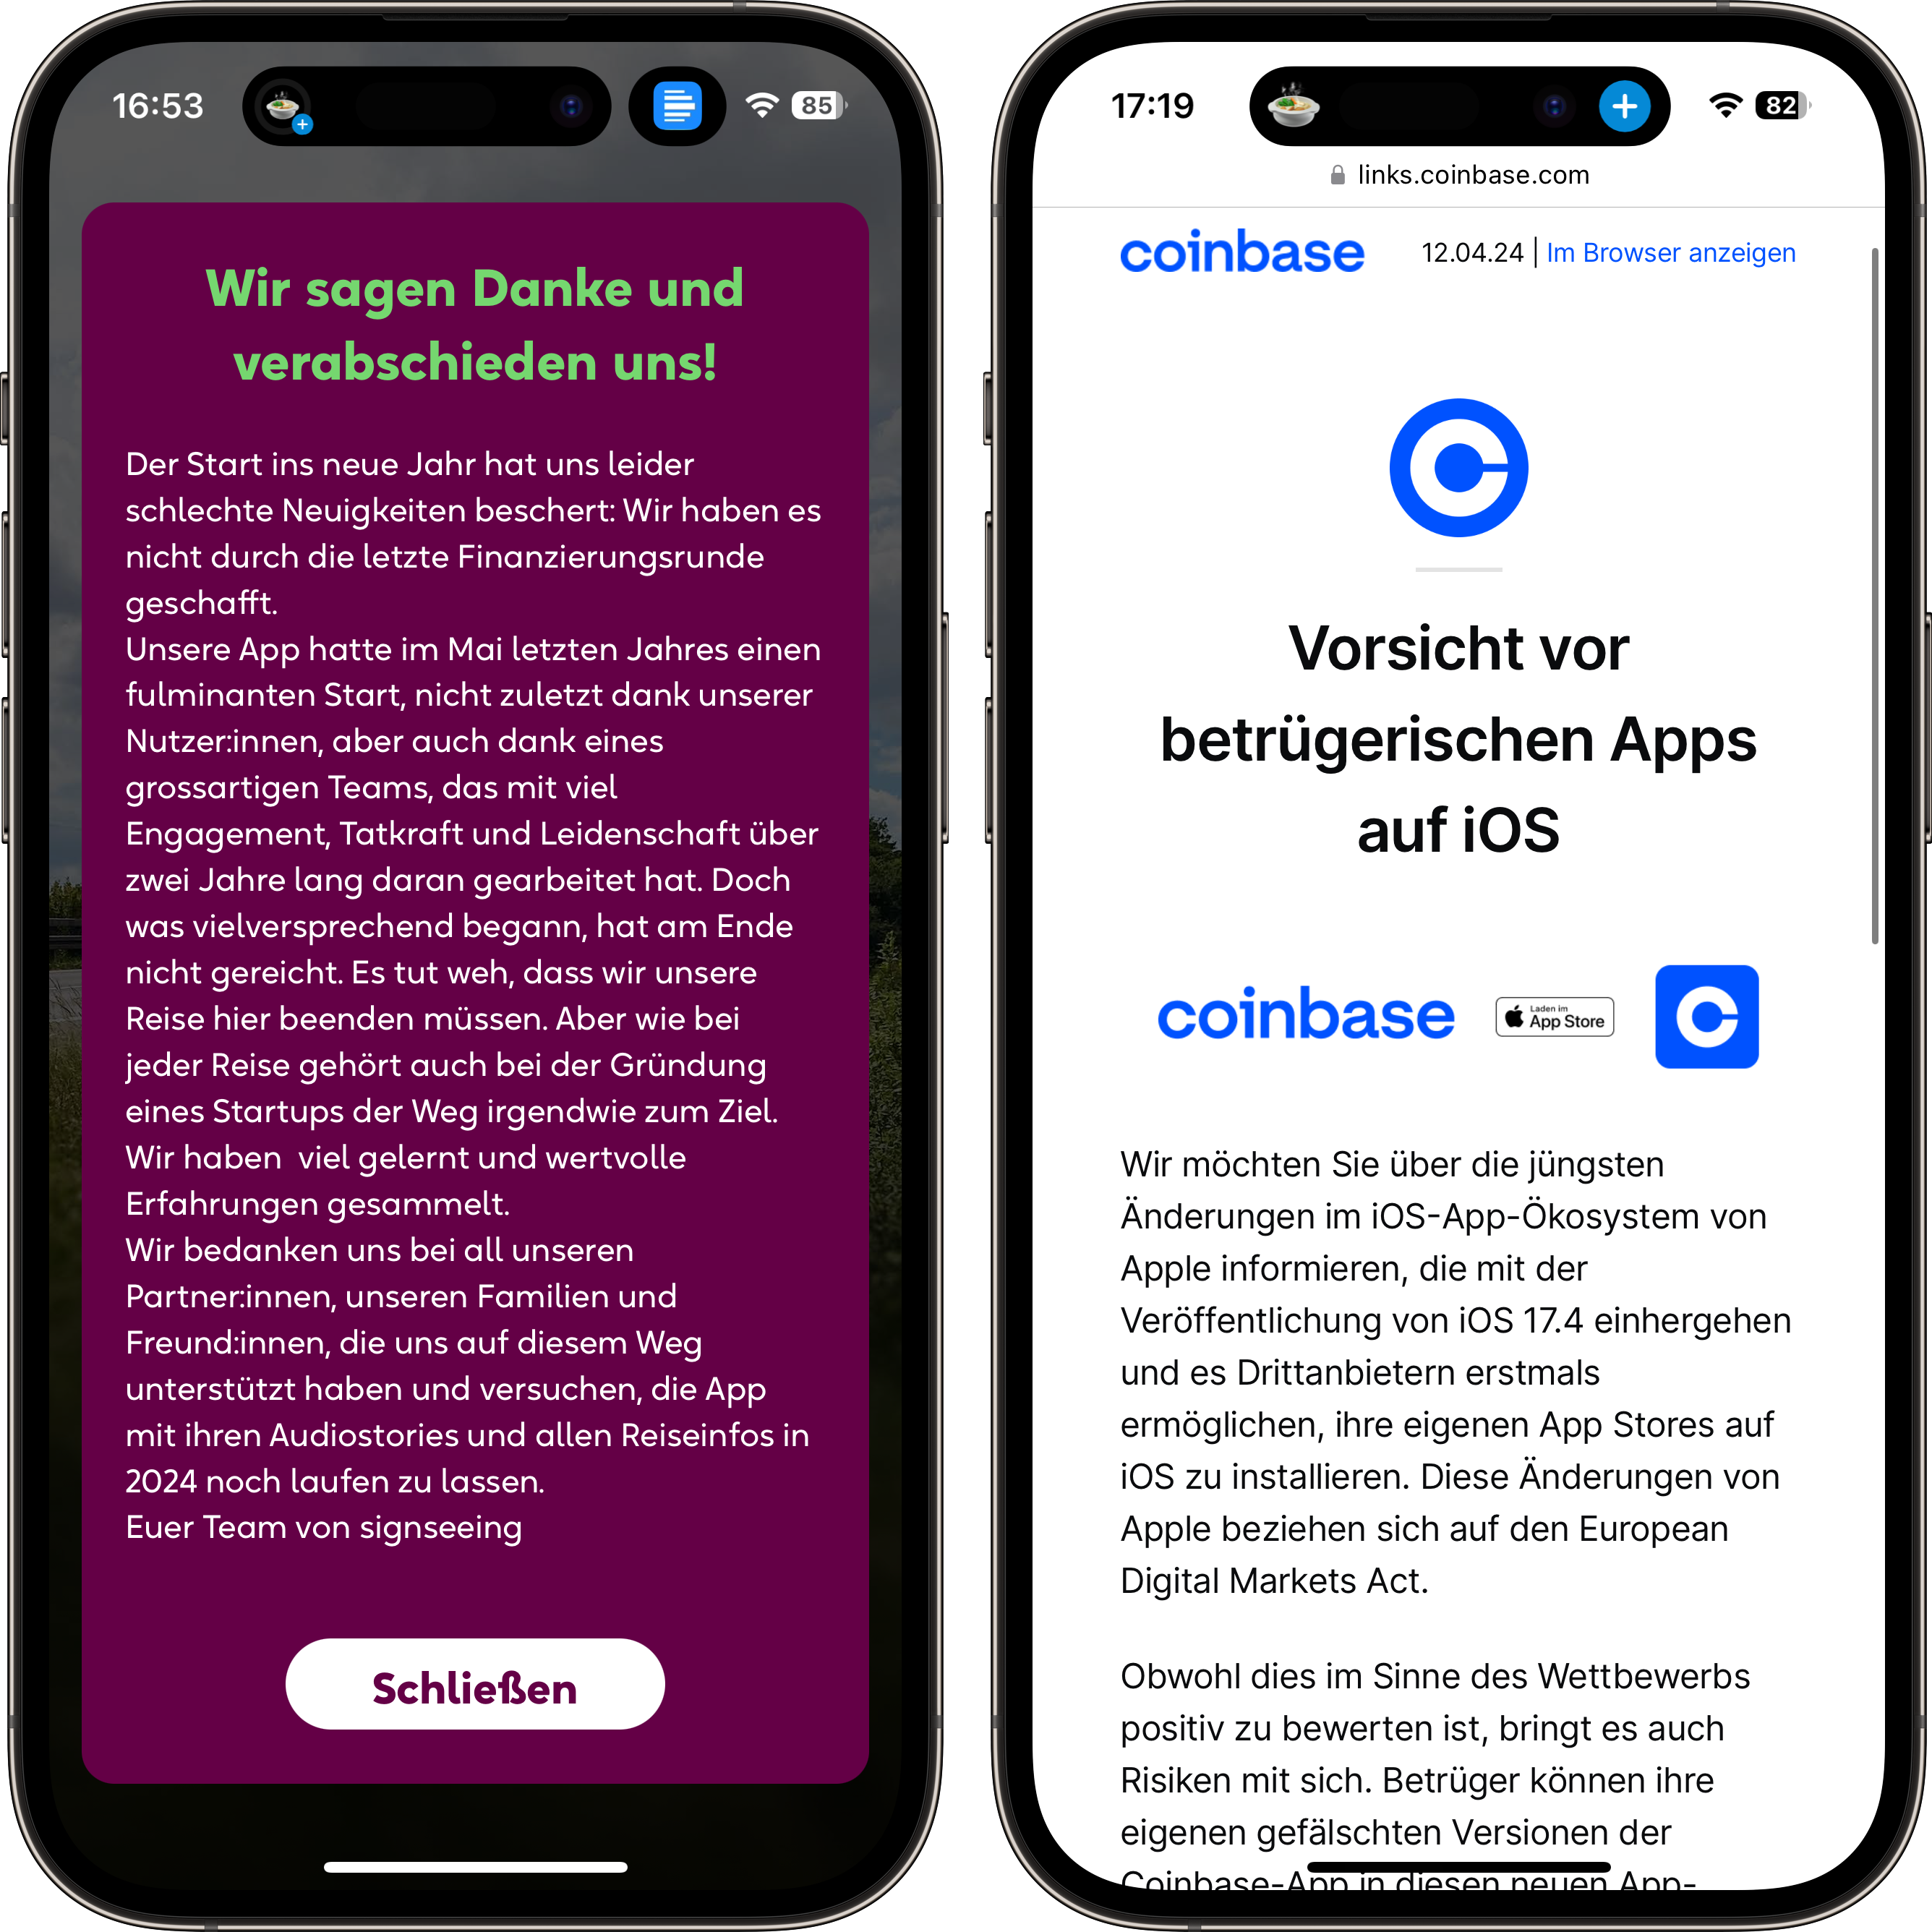 Signseeing wird eingestellt, Coinbase warnt vor neuen App Stores